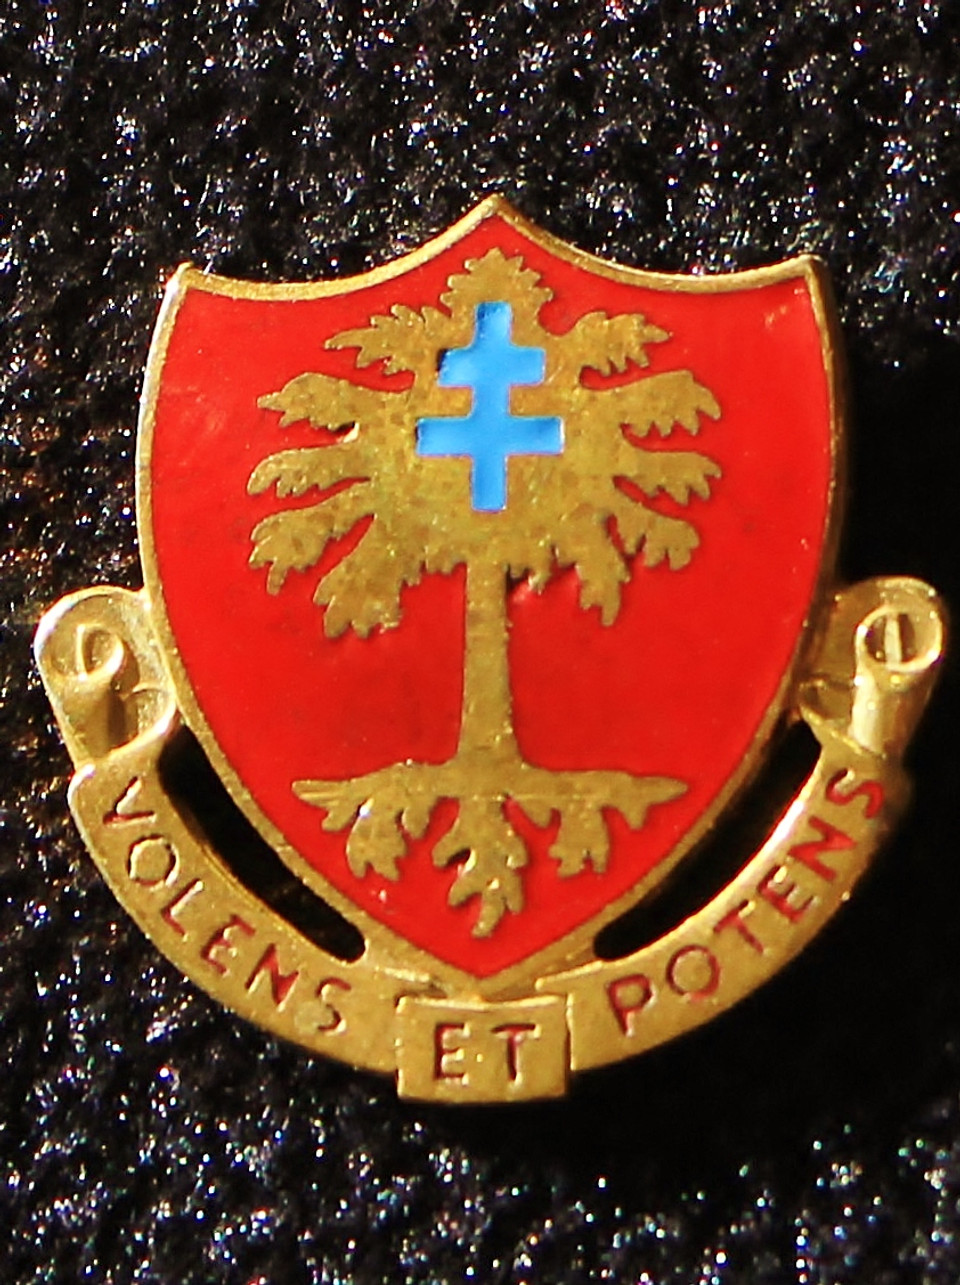 320th Field Artillery Battalion Unit Crest (Volens Et Potens)